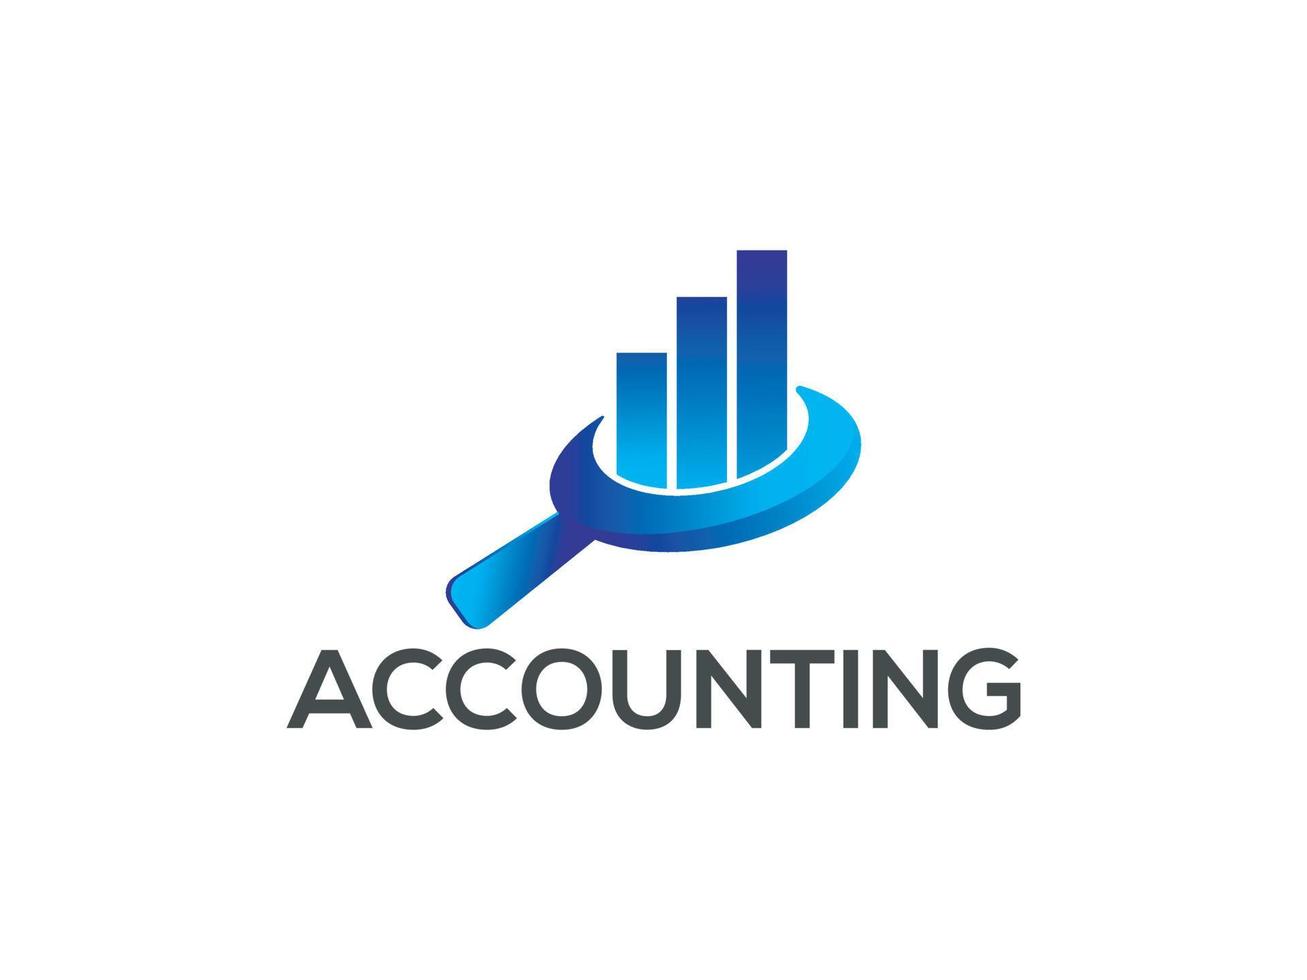 vettore pendenza contabilità logo